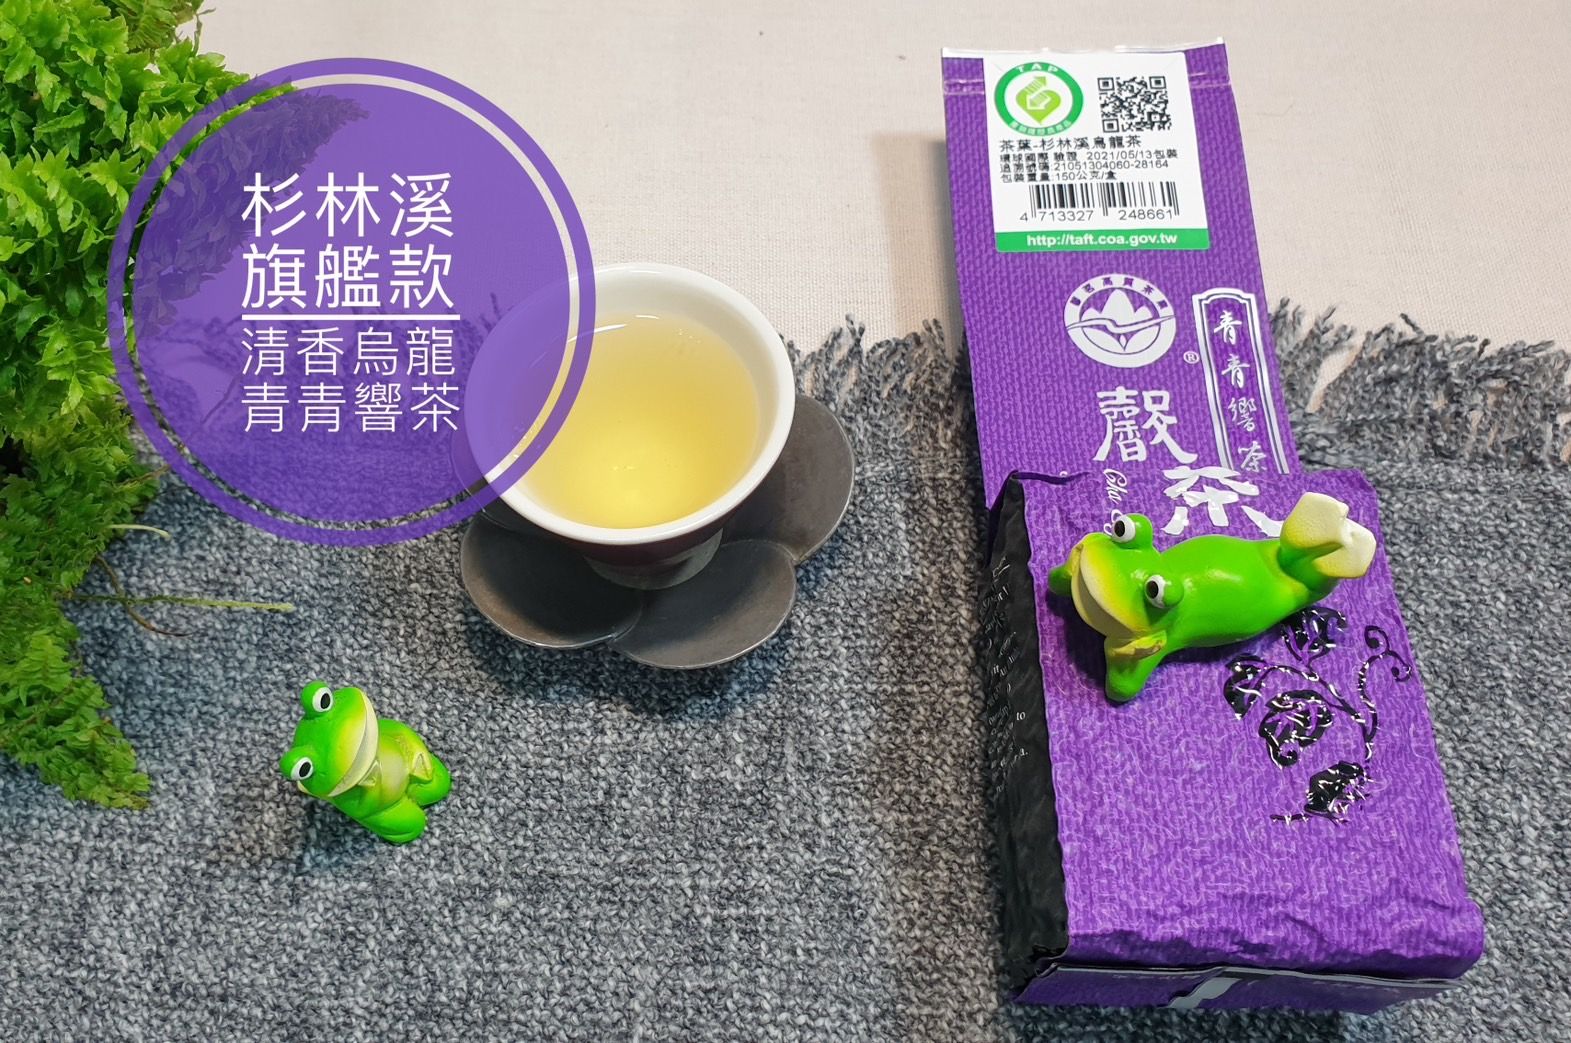 青青響茶-清香旗艦款-杉林溪產銷產地驗證第一品牌-特優五星衛生安全製茶廠監製